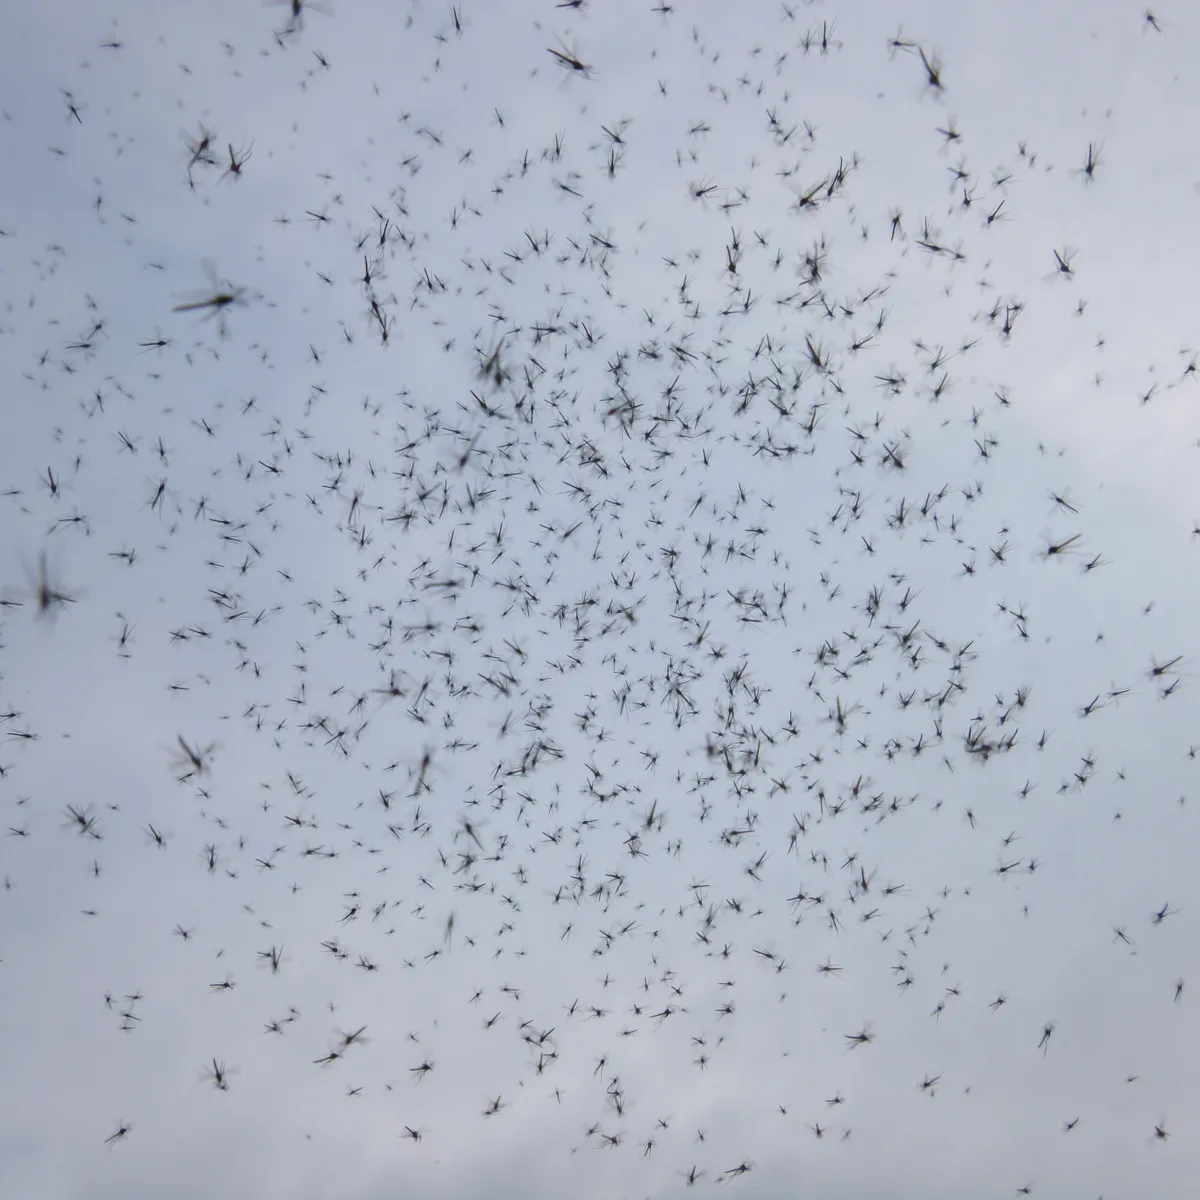 swarm of midges